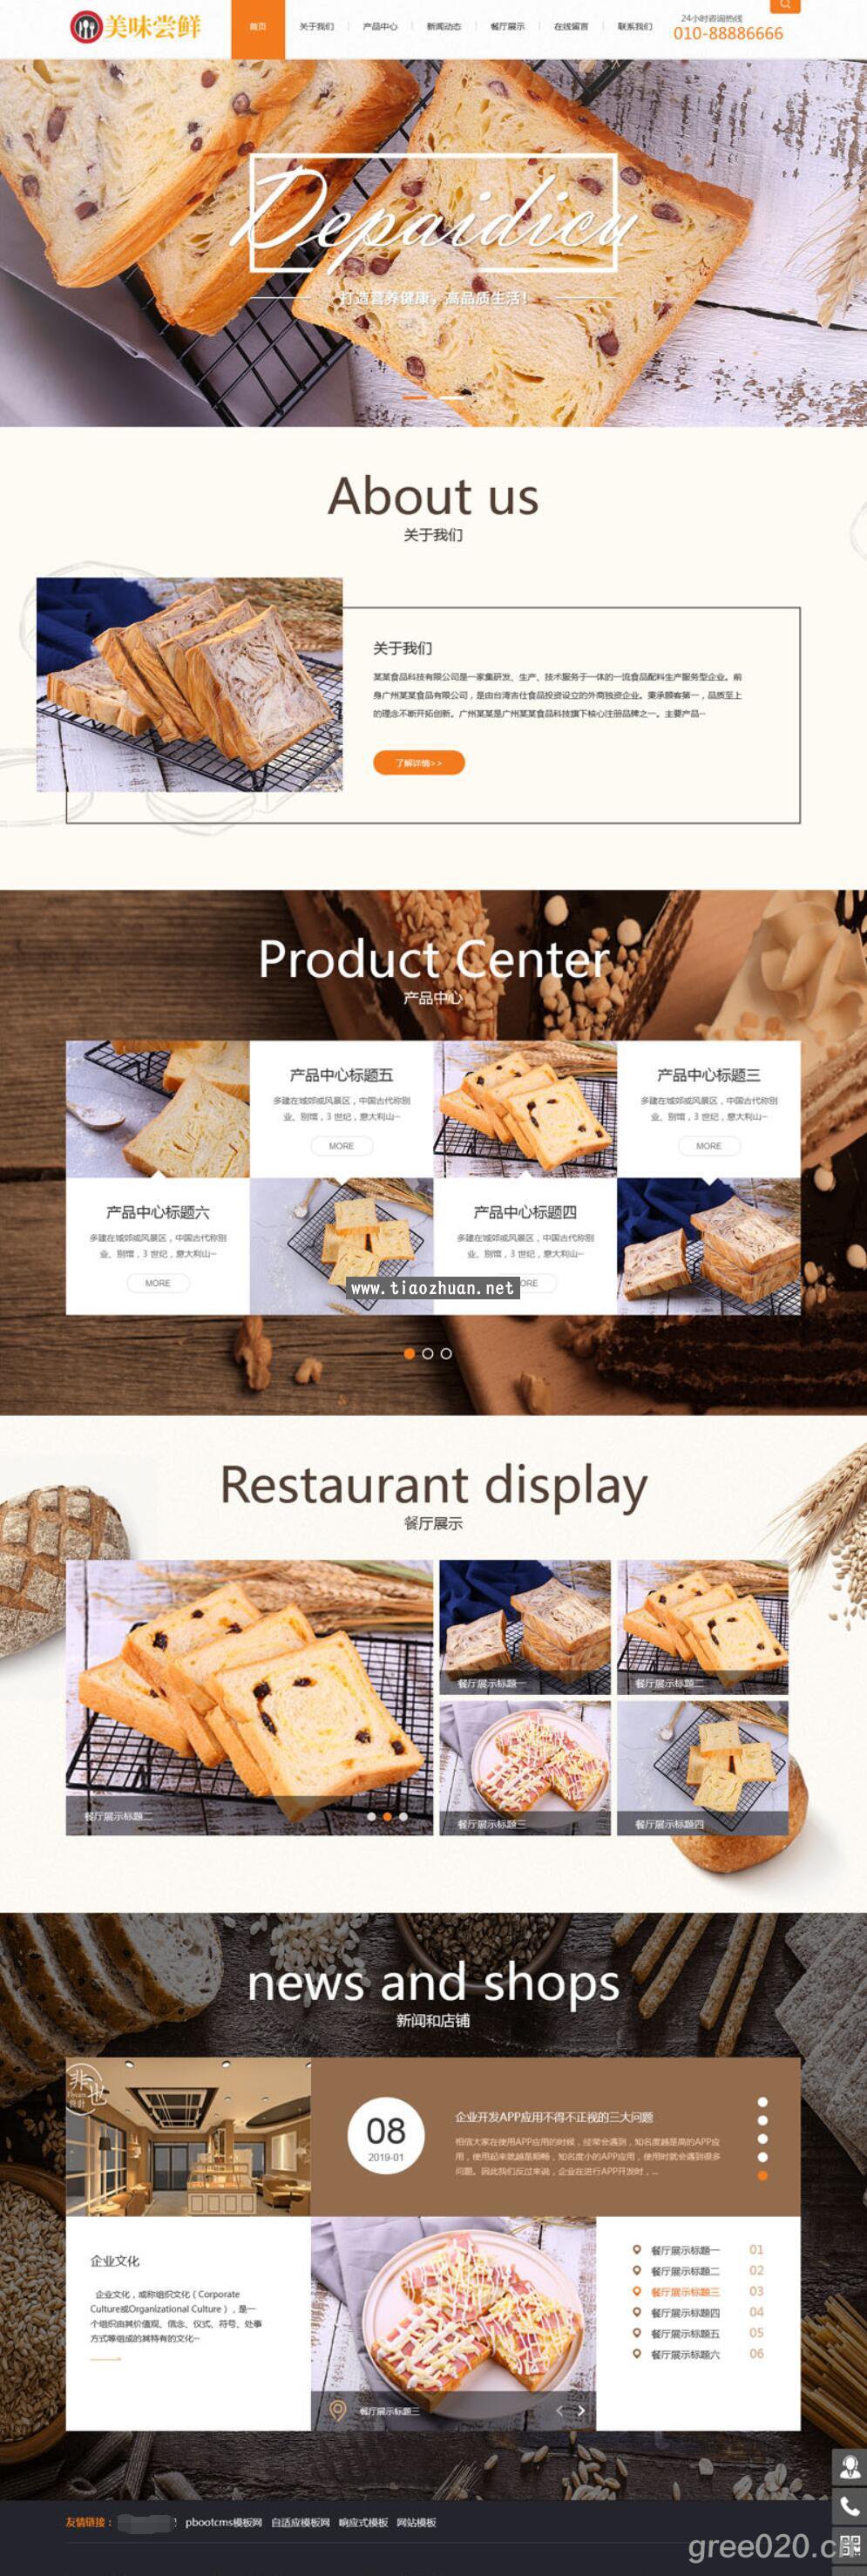 食品糕点网站模板 地方美食餐网站源码下载